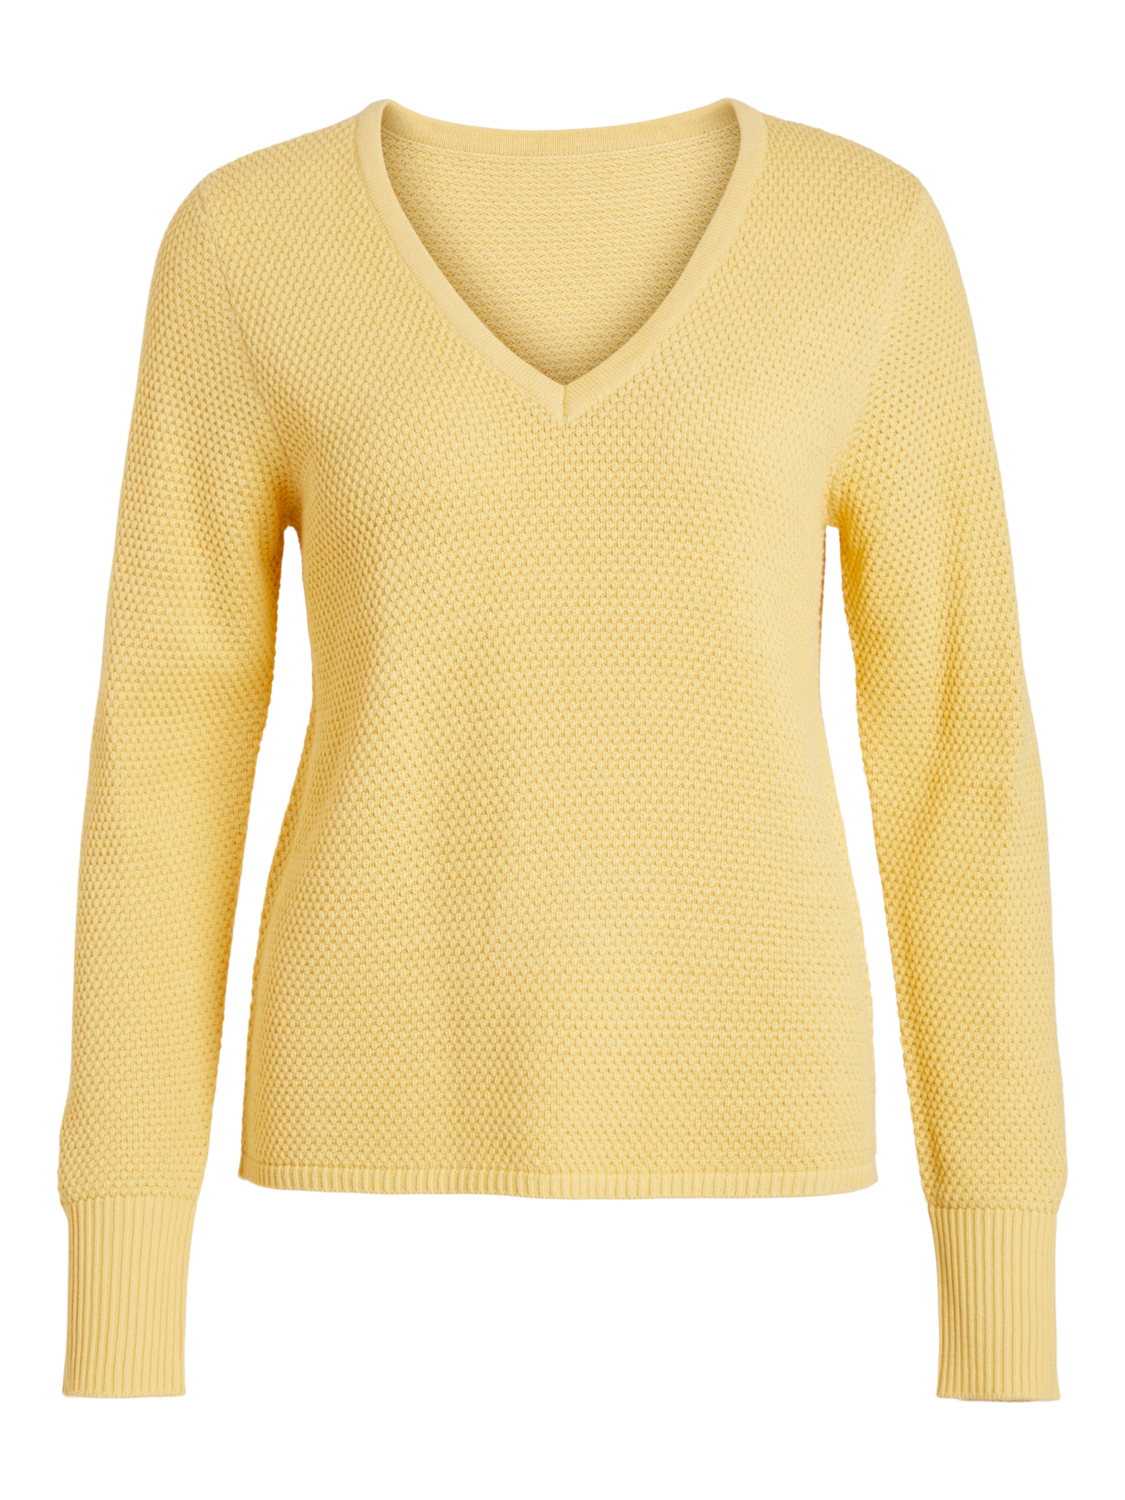 Odzież Kobiety VILA Sweter Chassa w kolorze Żółtym 